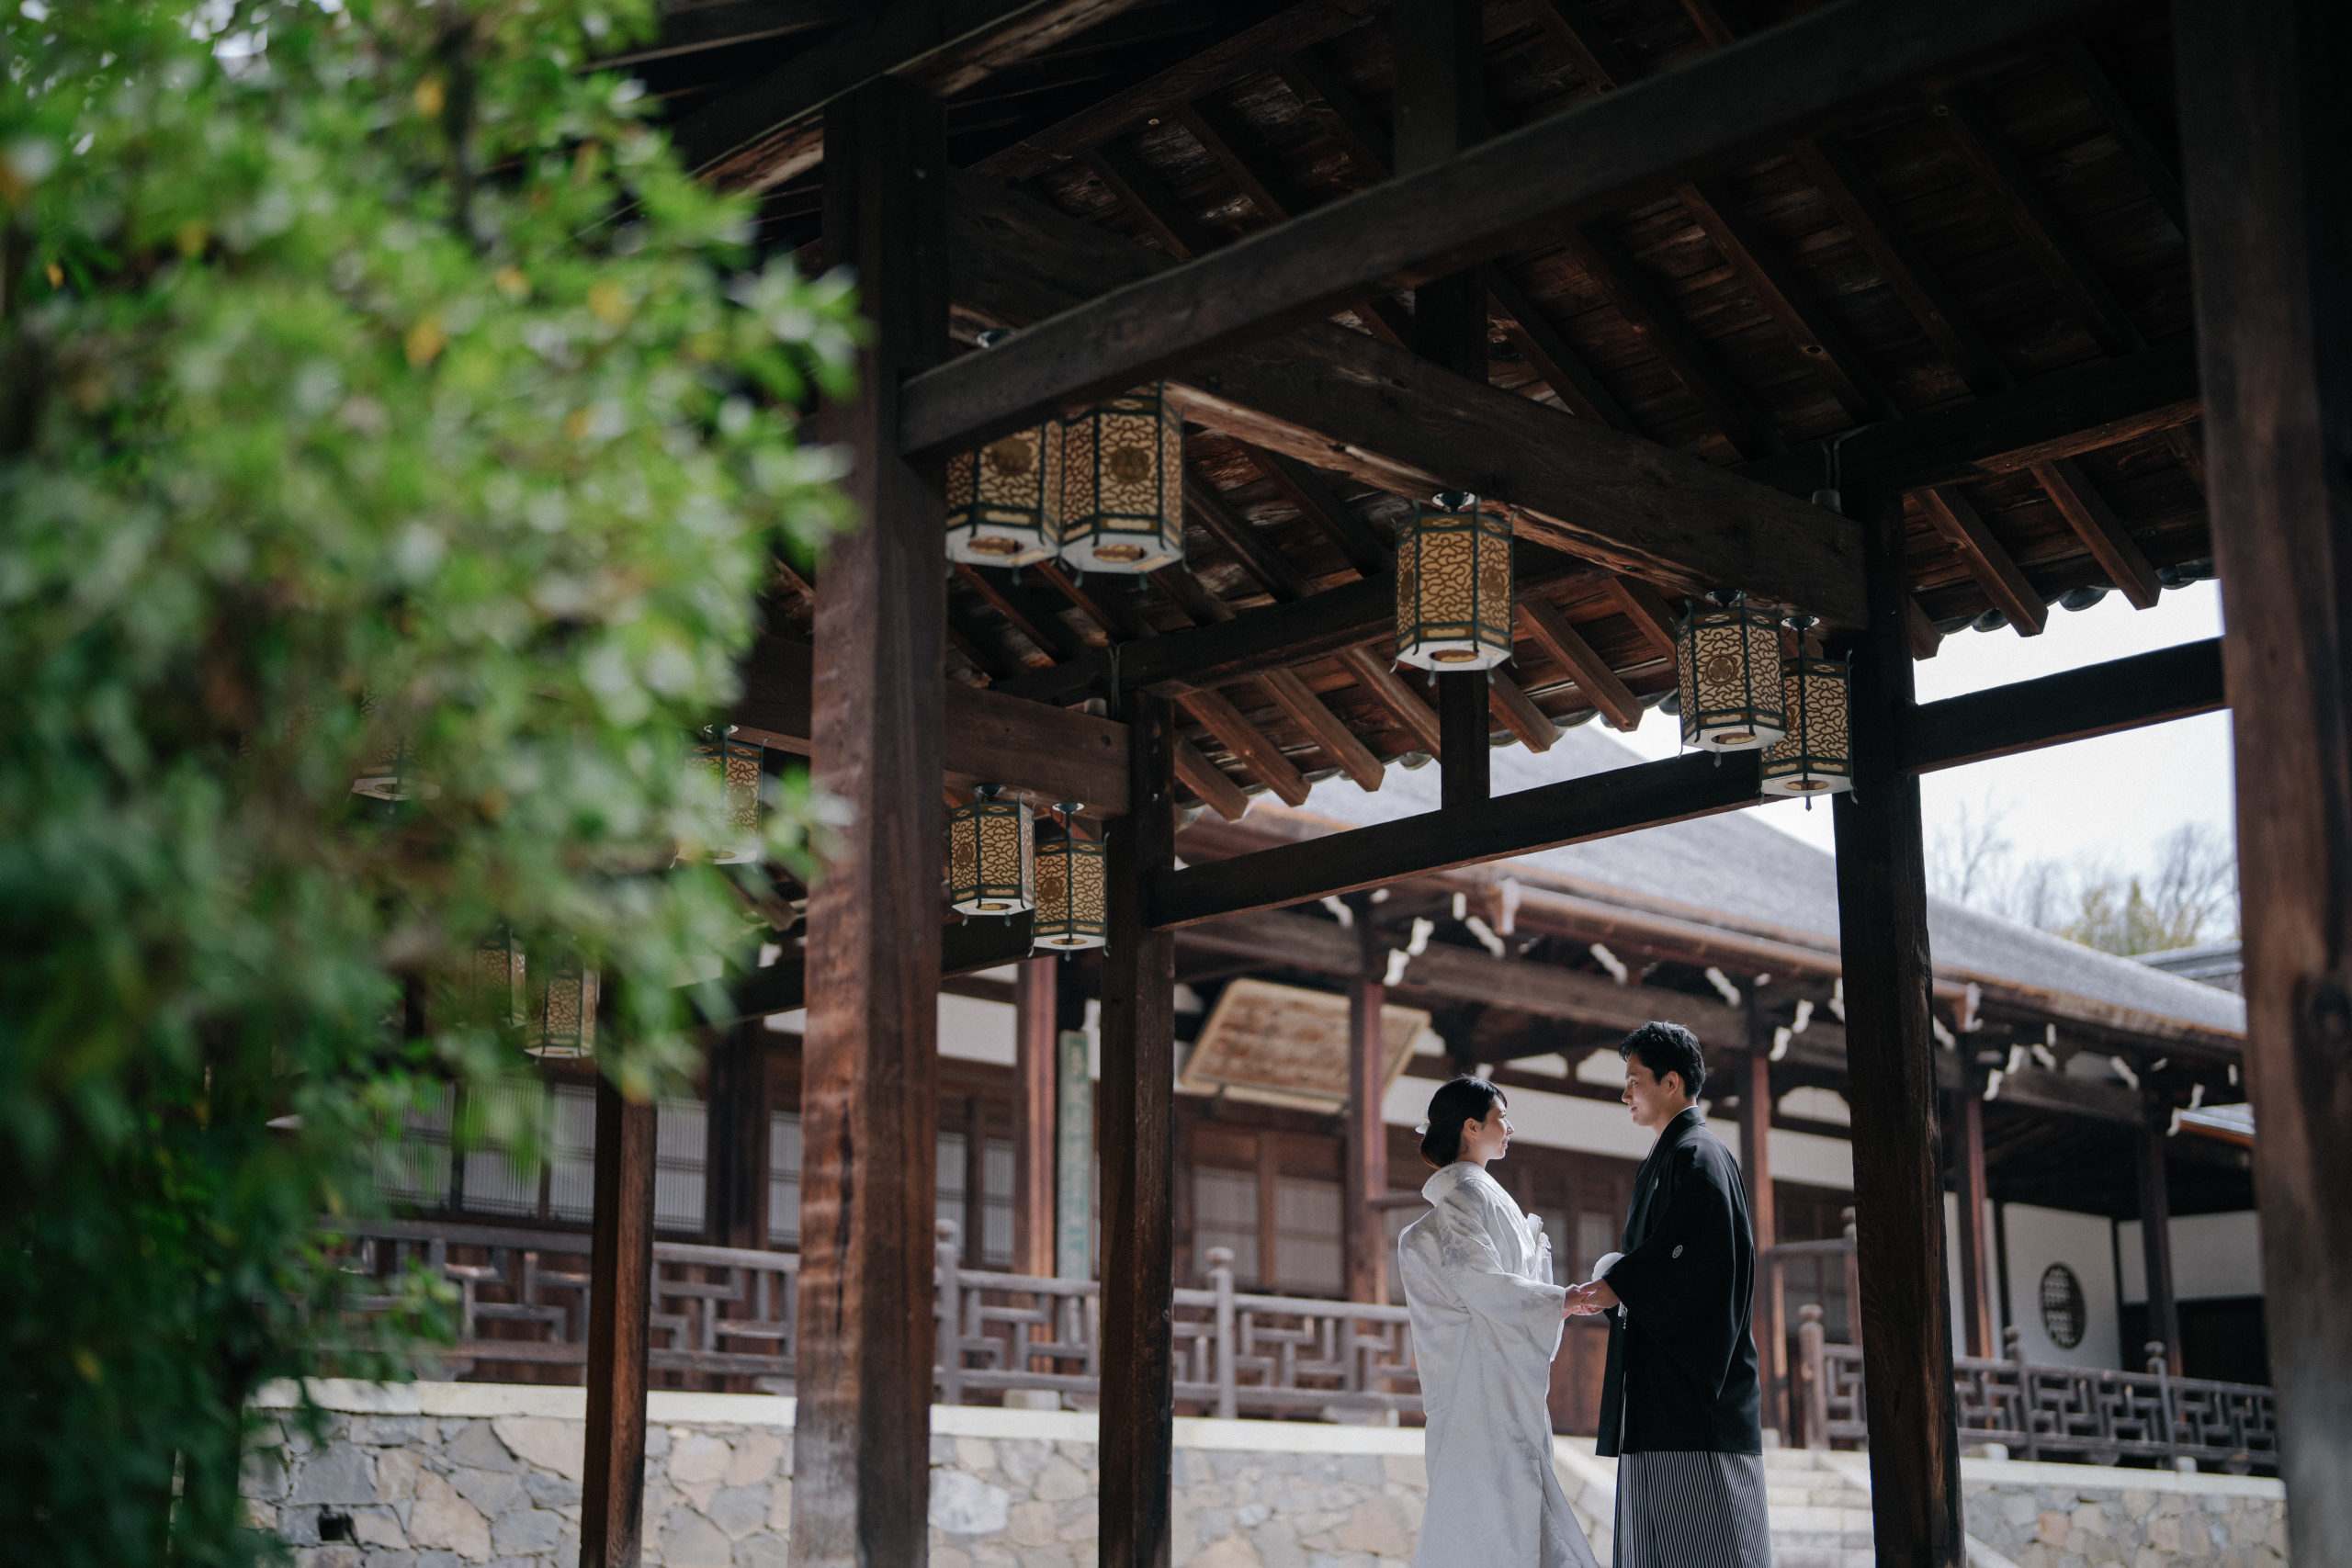 萬福寺内には、緑を使った撮影が可能なスポットもある。